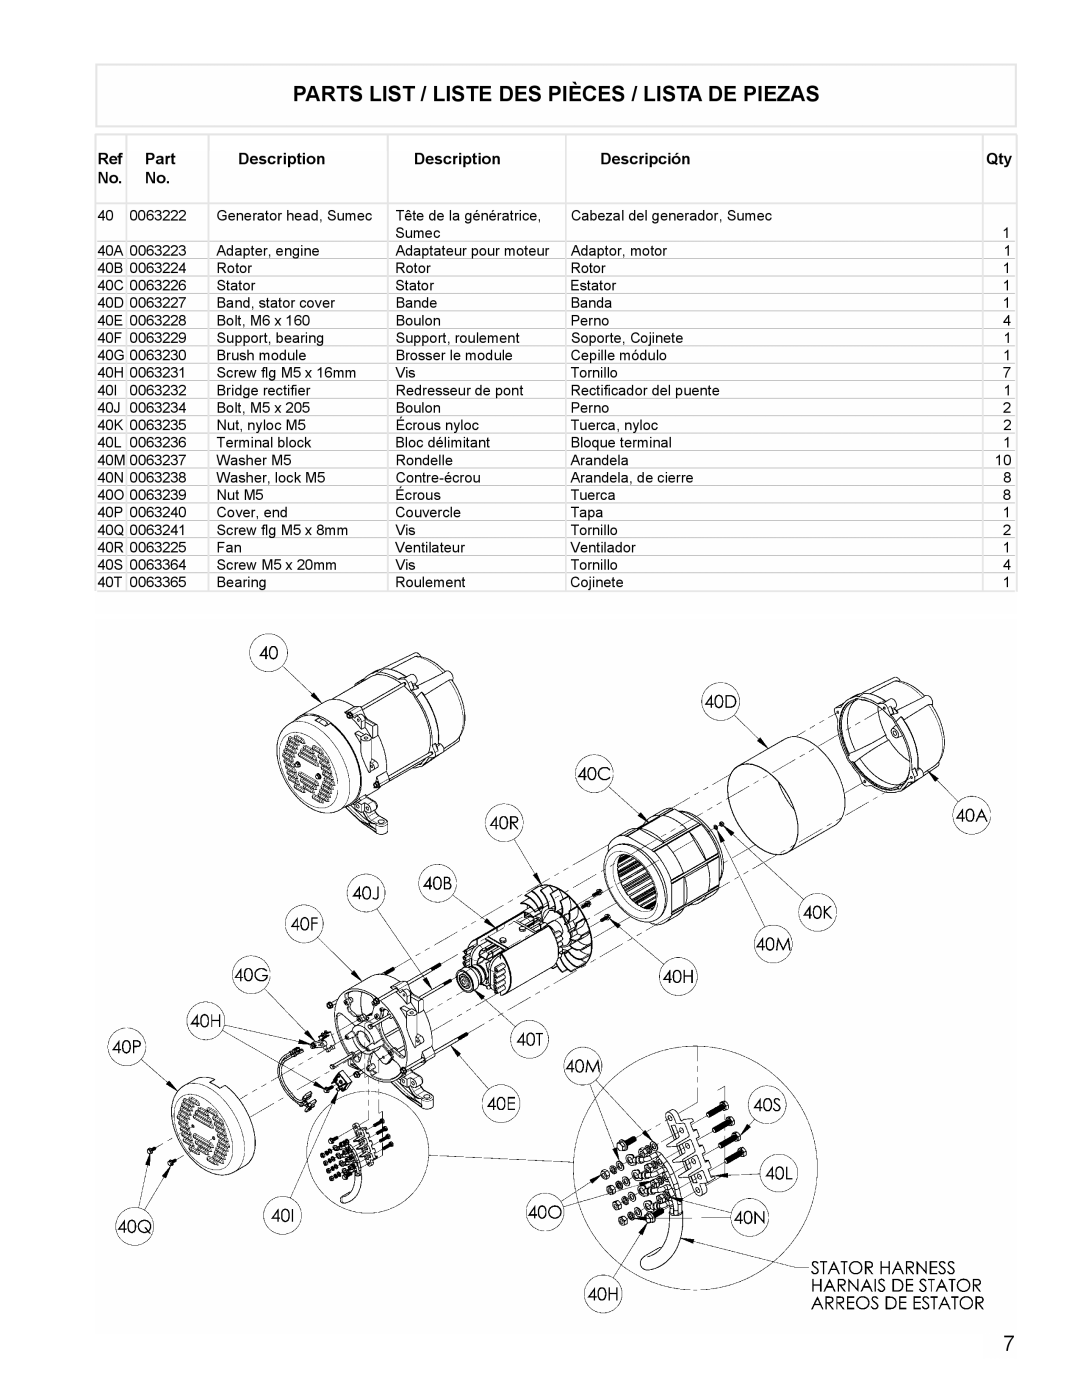 Powermate PMA525302.01 manual Parts List / Liste Des Pièces / Lista De Piezas, 0063222 